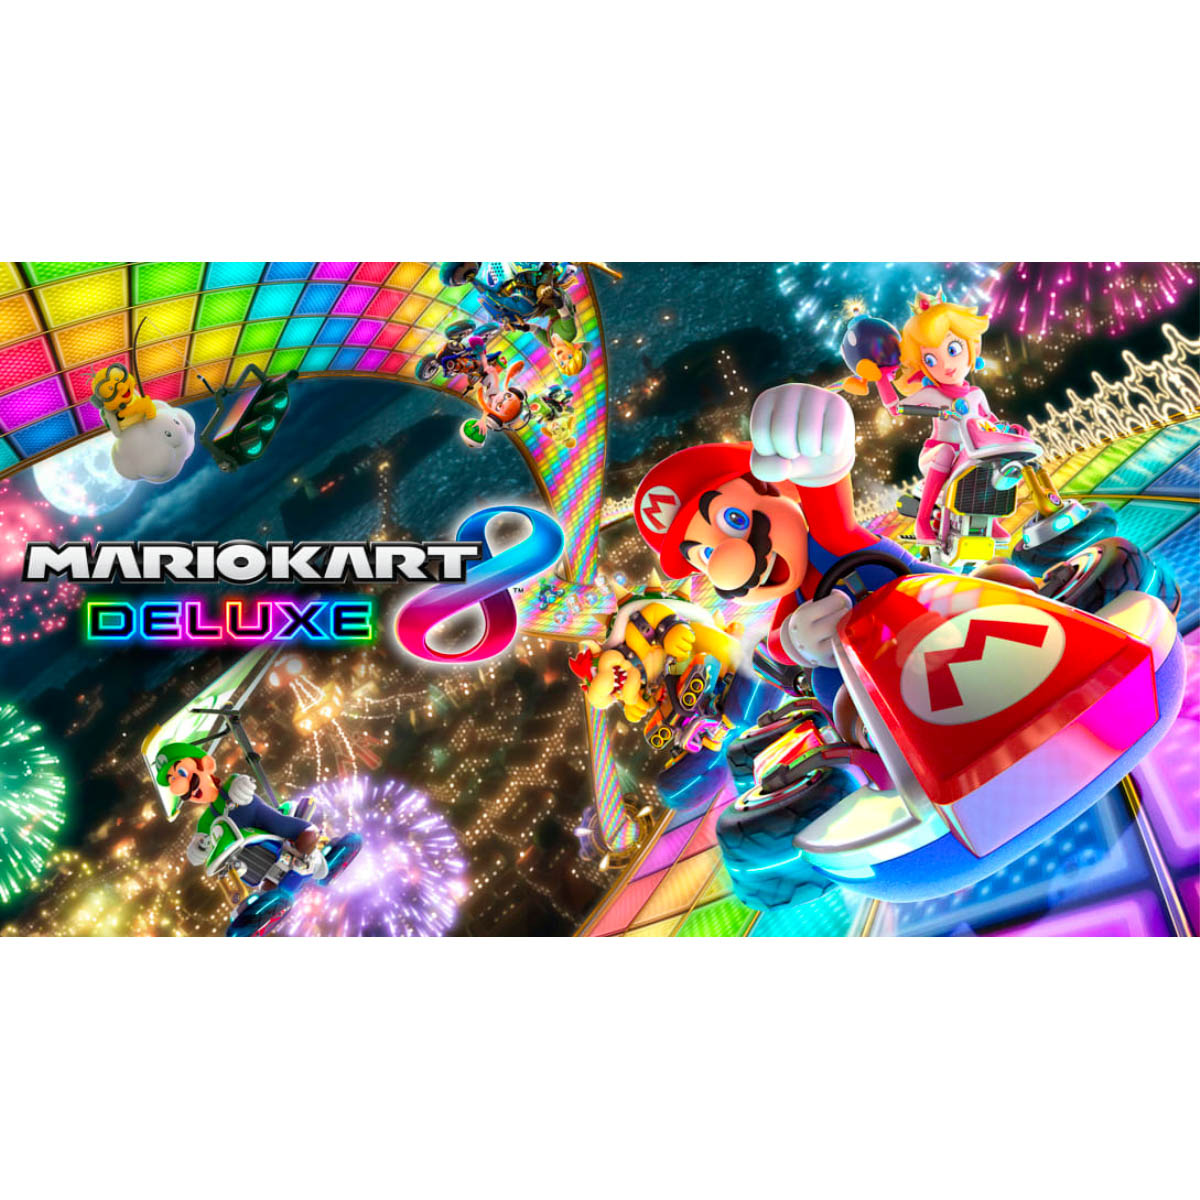 Mario Kart 8 Deluxe - Nintendo Switch 45496590475